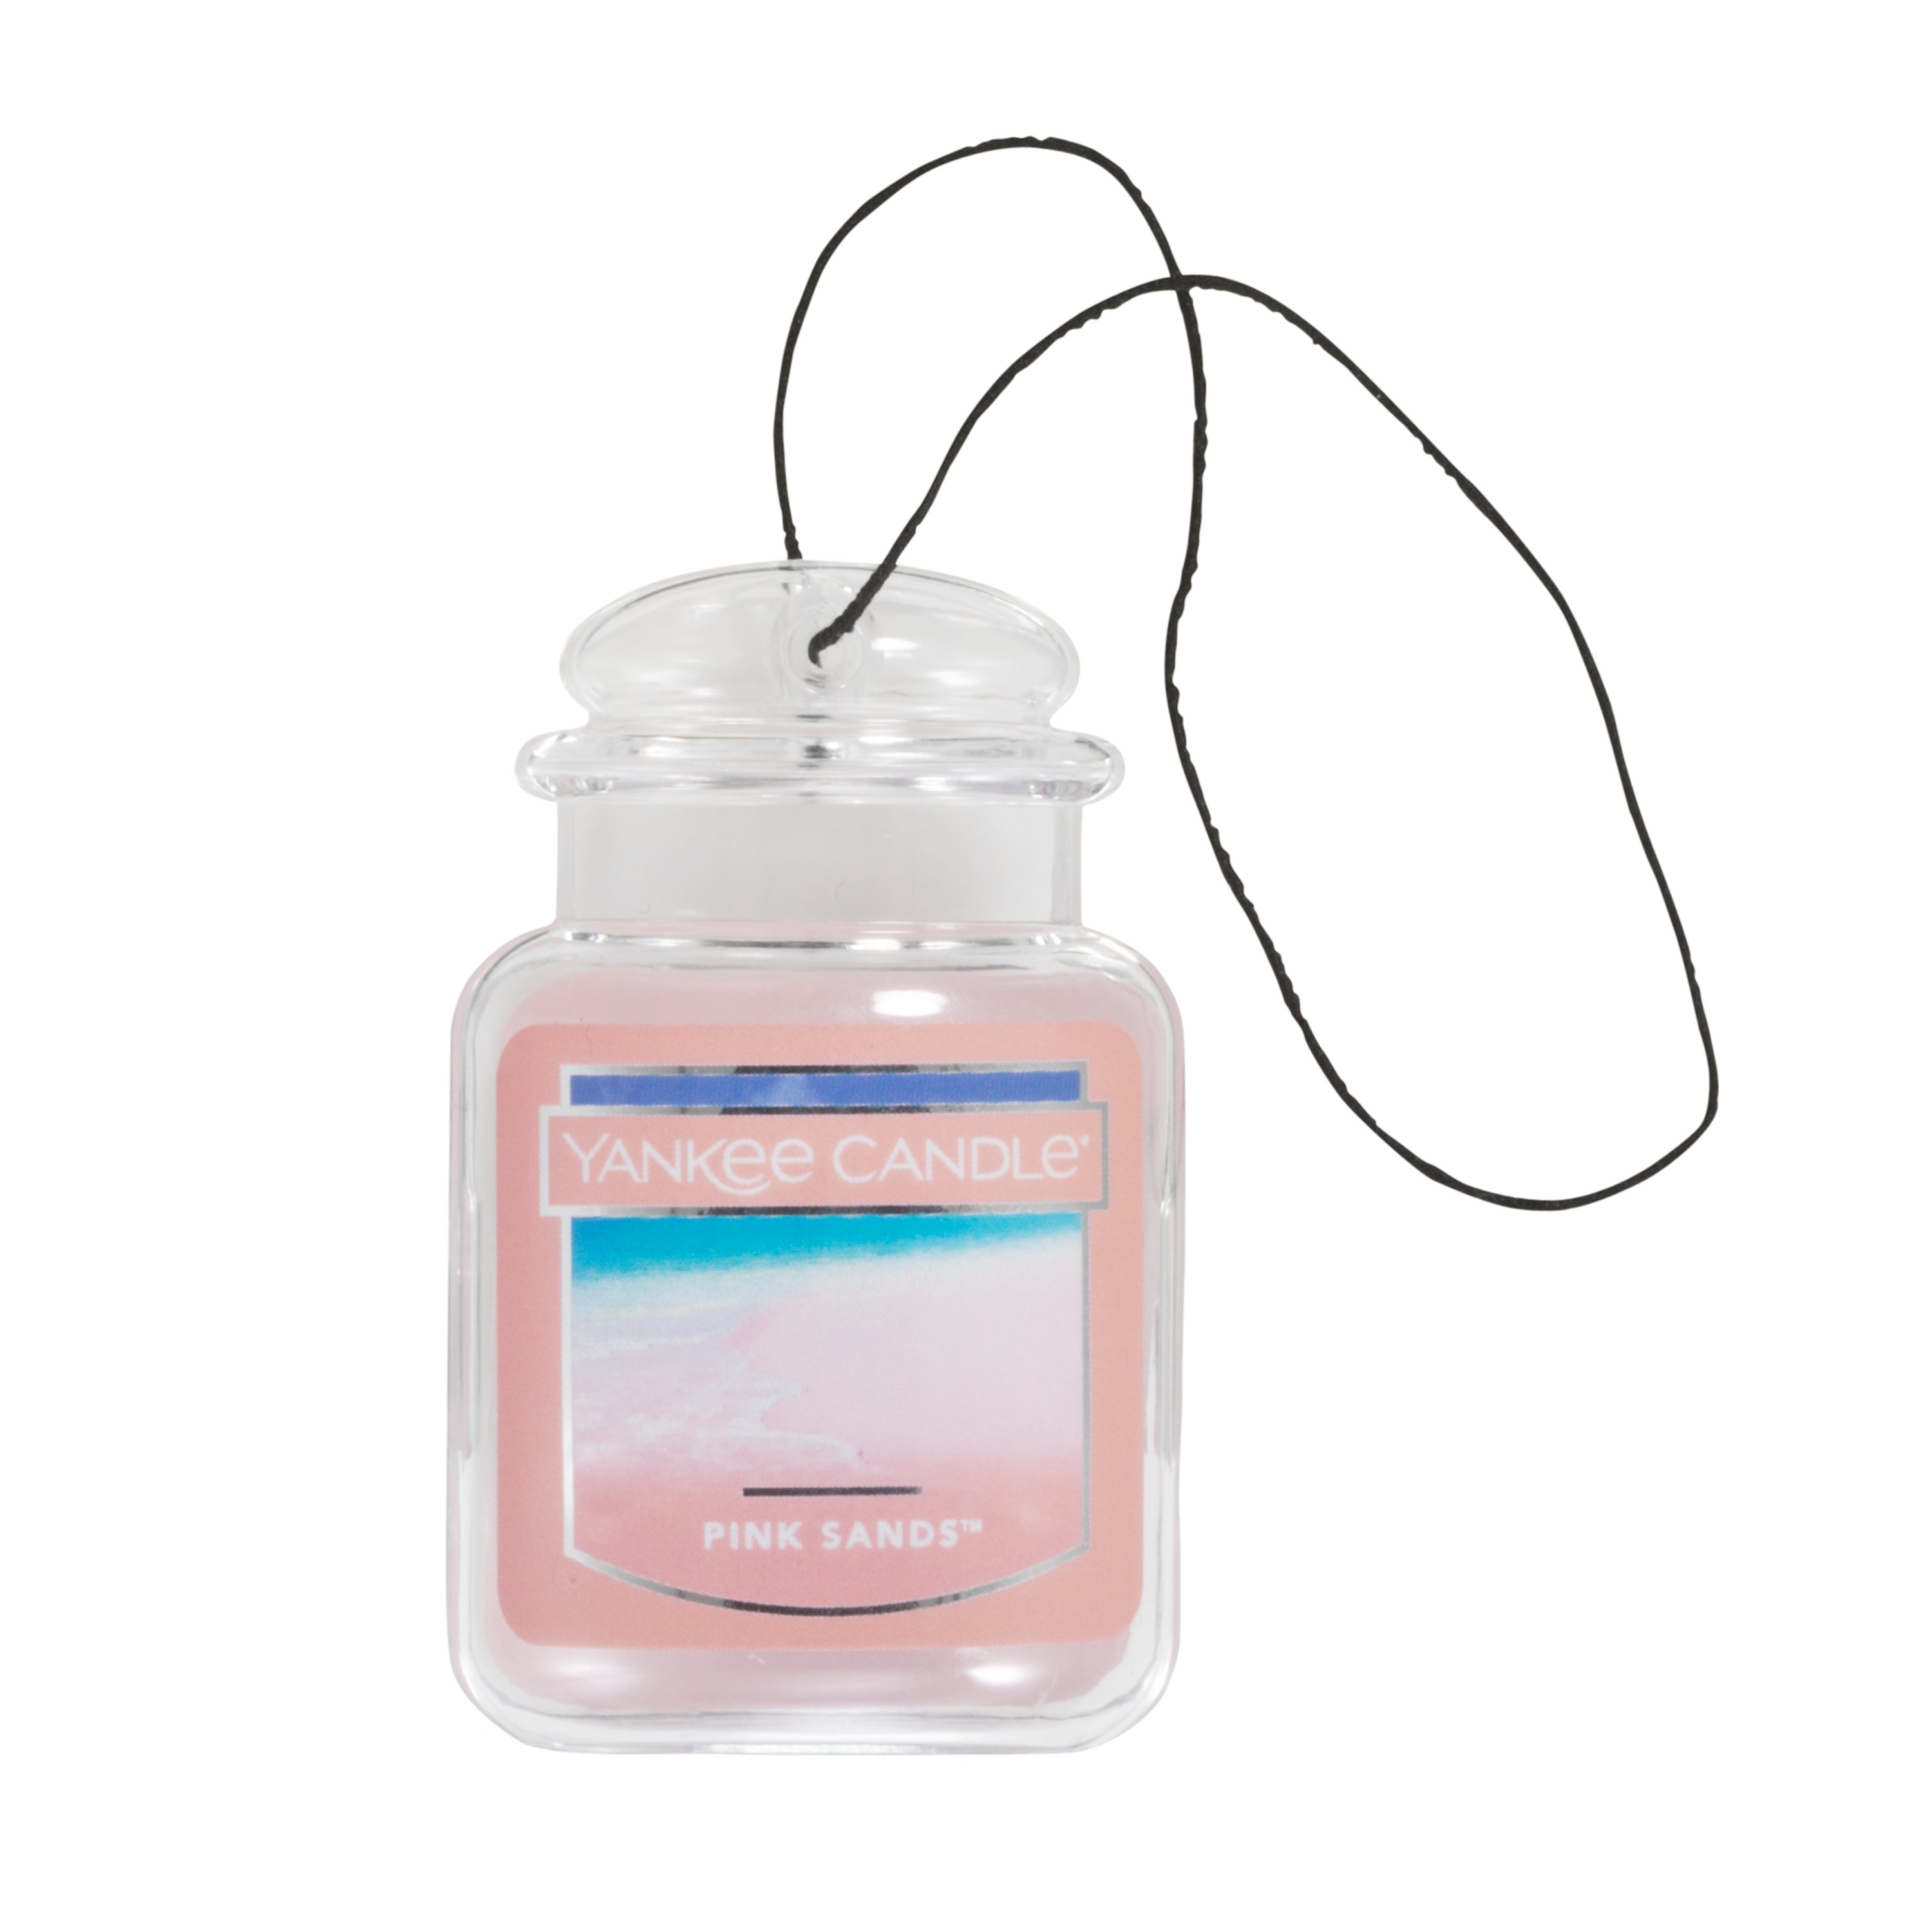 Yankee Candle 2D Car Jar Air Freshener Freshner Fragrance Scent - PINK  SANDS